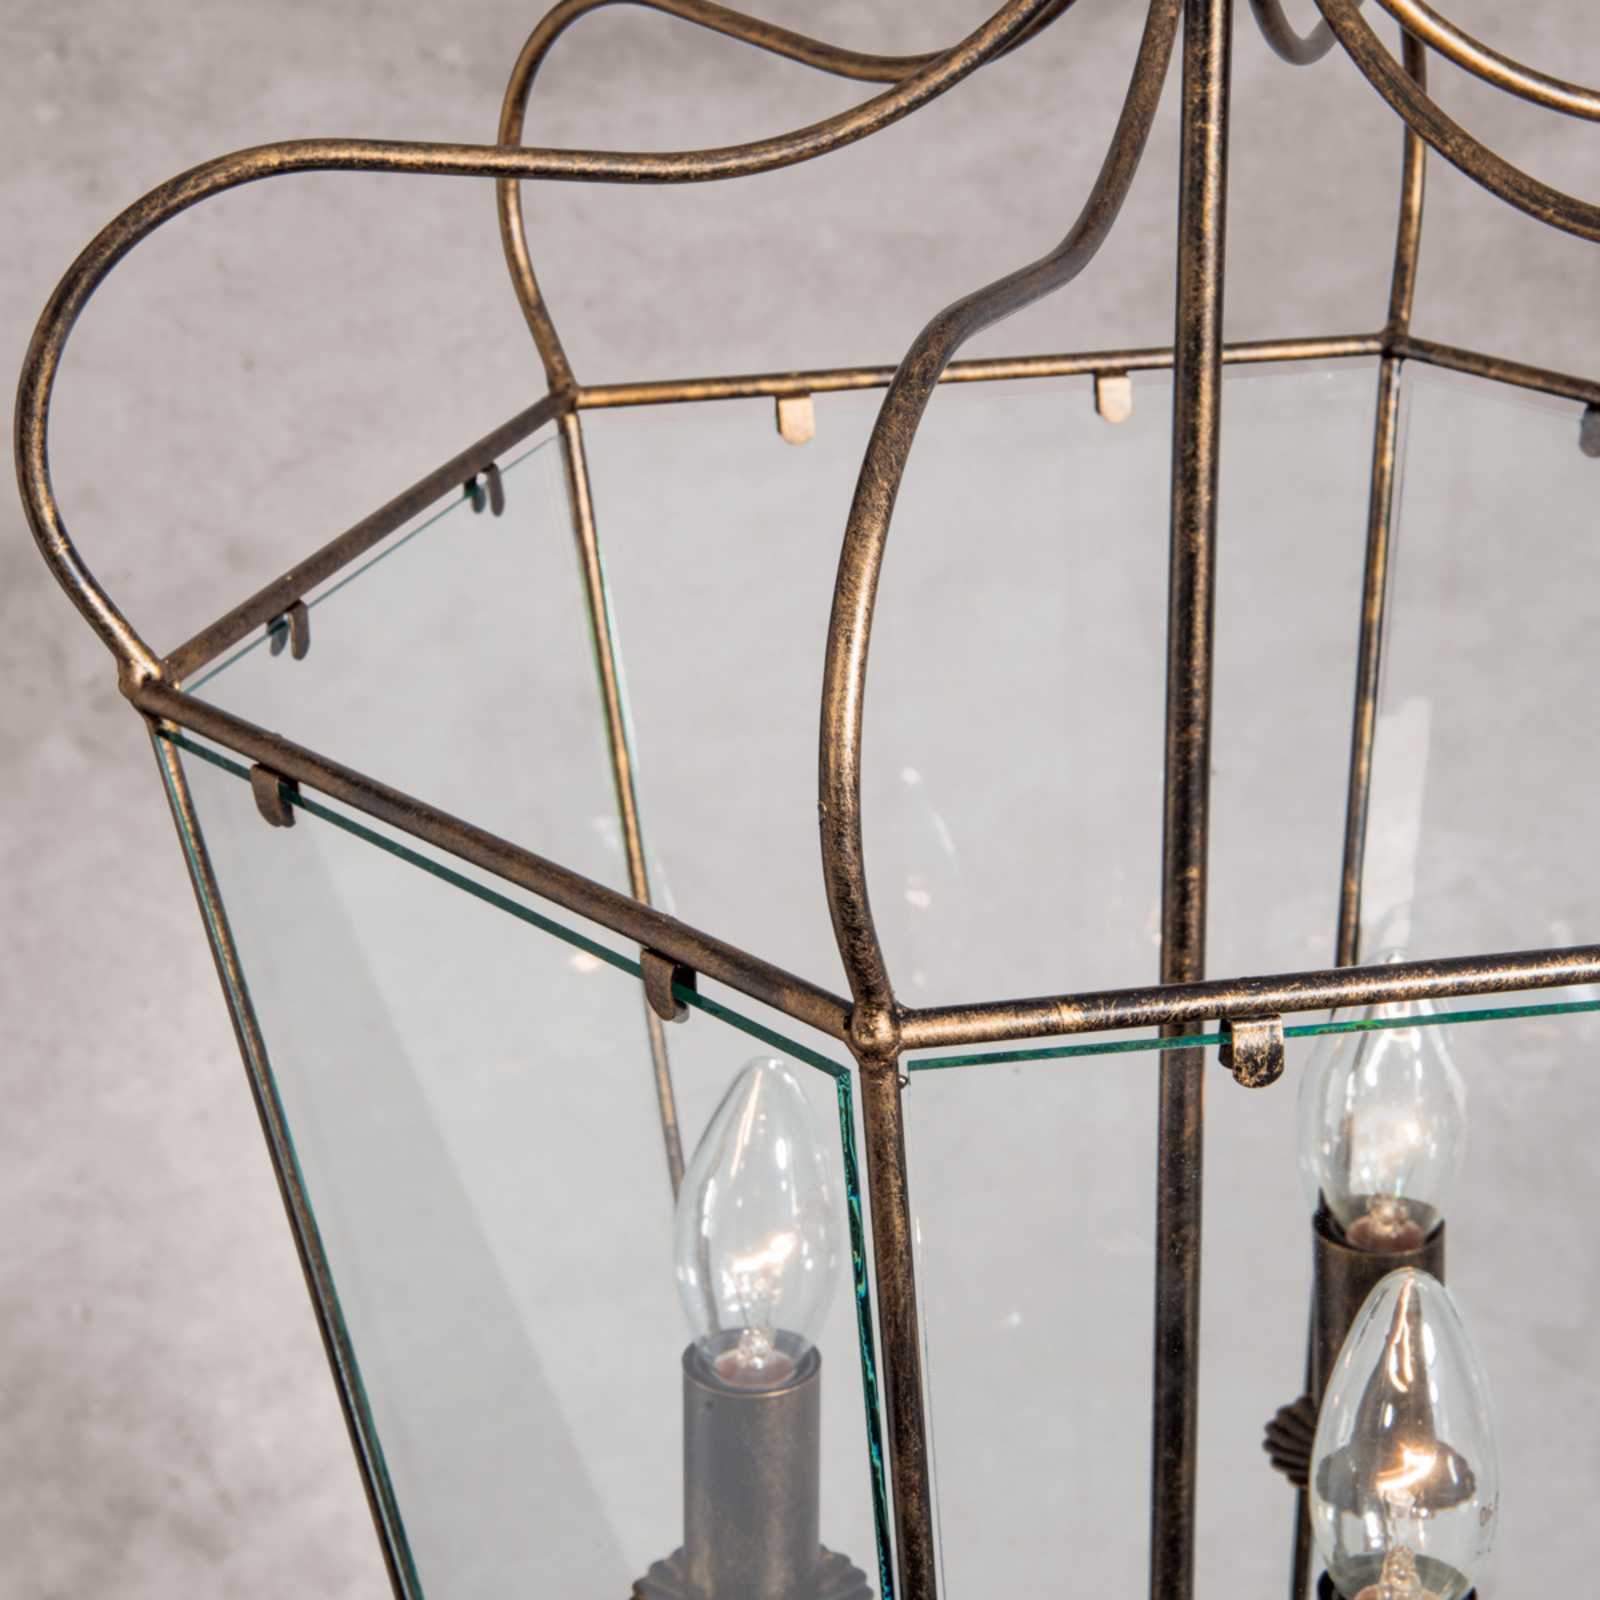 Manto viseća svjetiljka u izgledu lampiona, 3 žarulje.